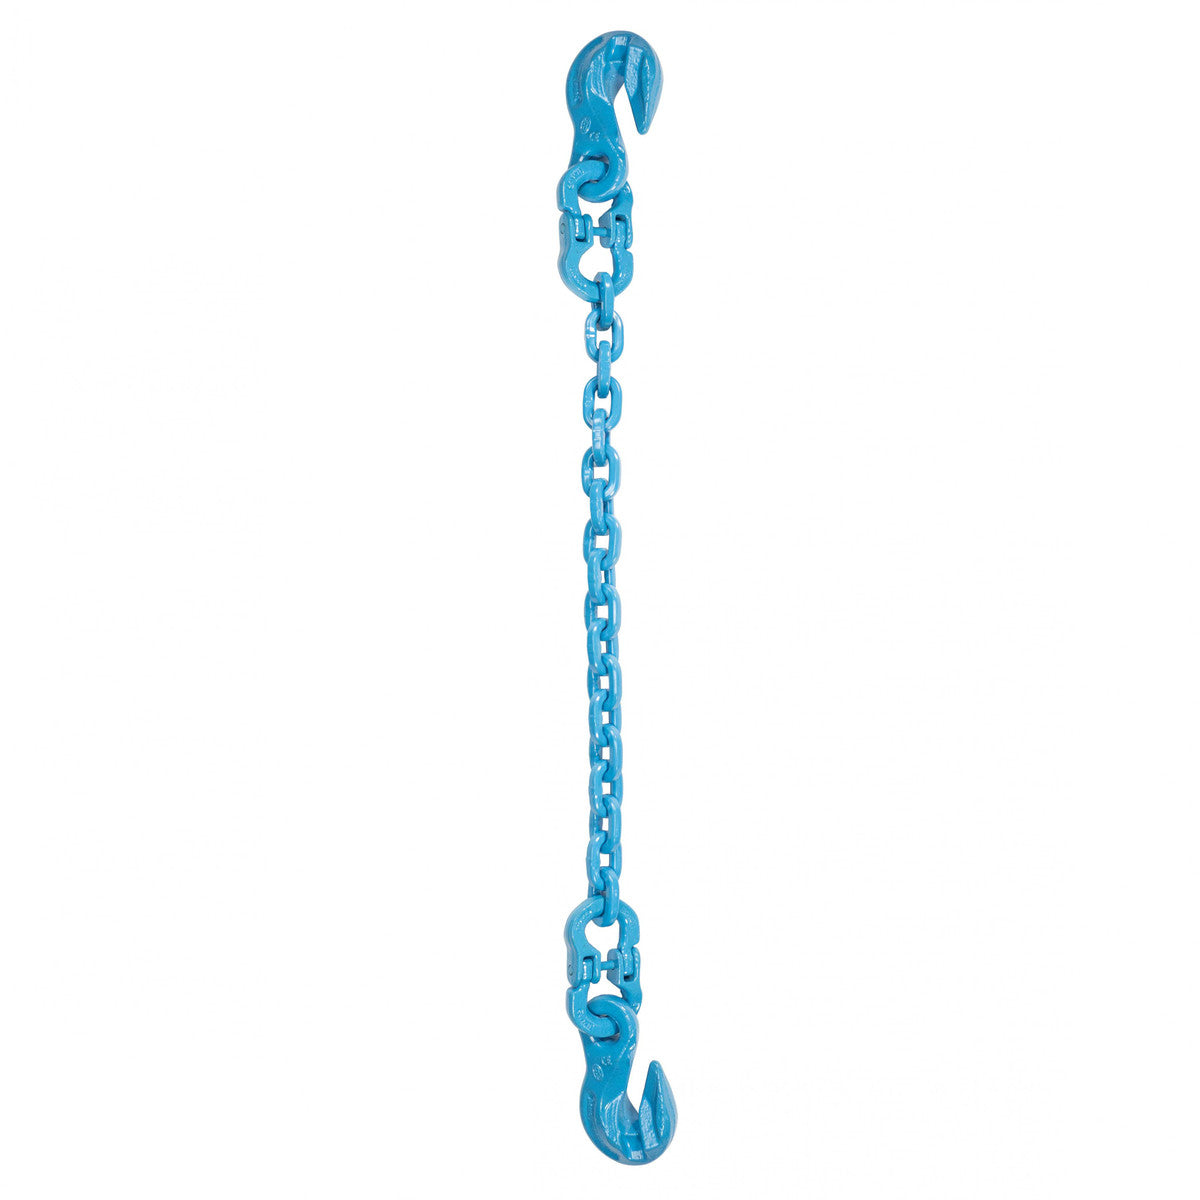 9/32" x 18' - Pewag Single Leg Chain Sling w/ Grab & Grab Hooks - Grade 120